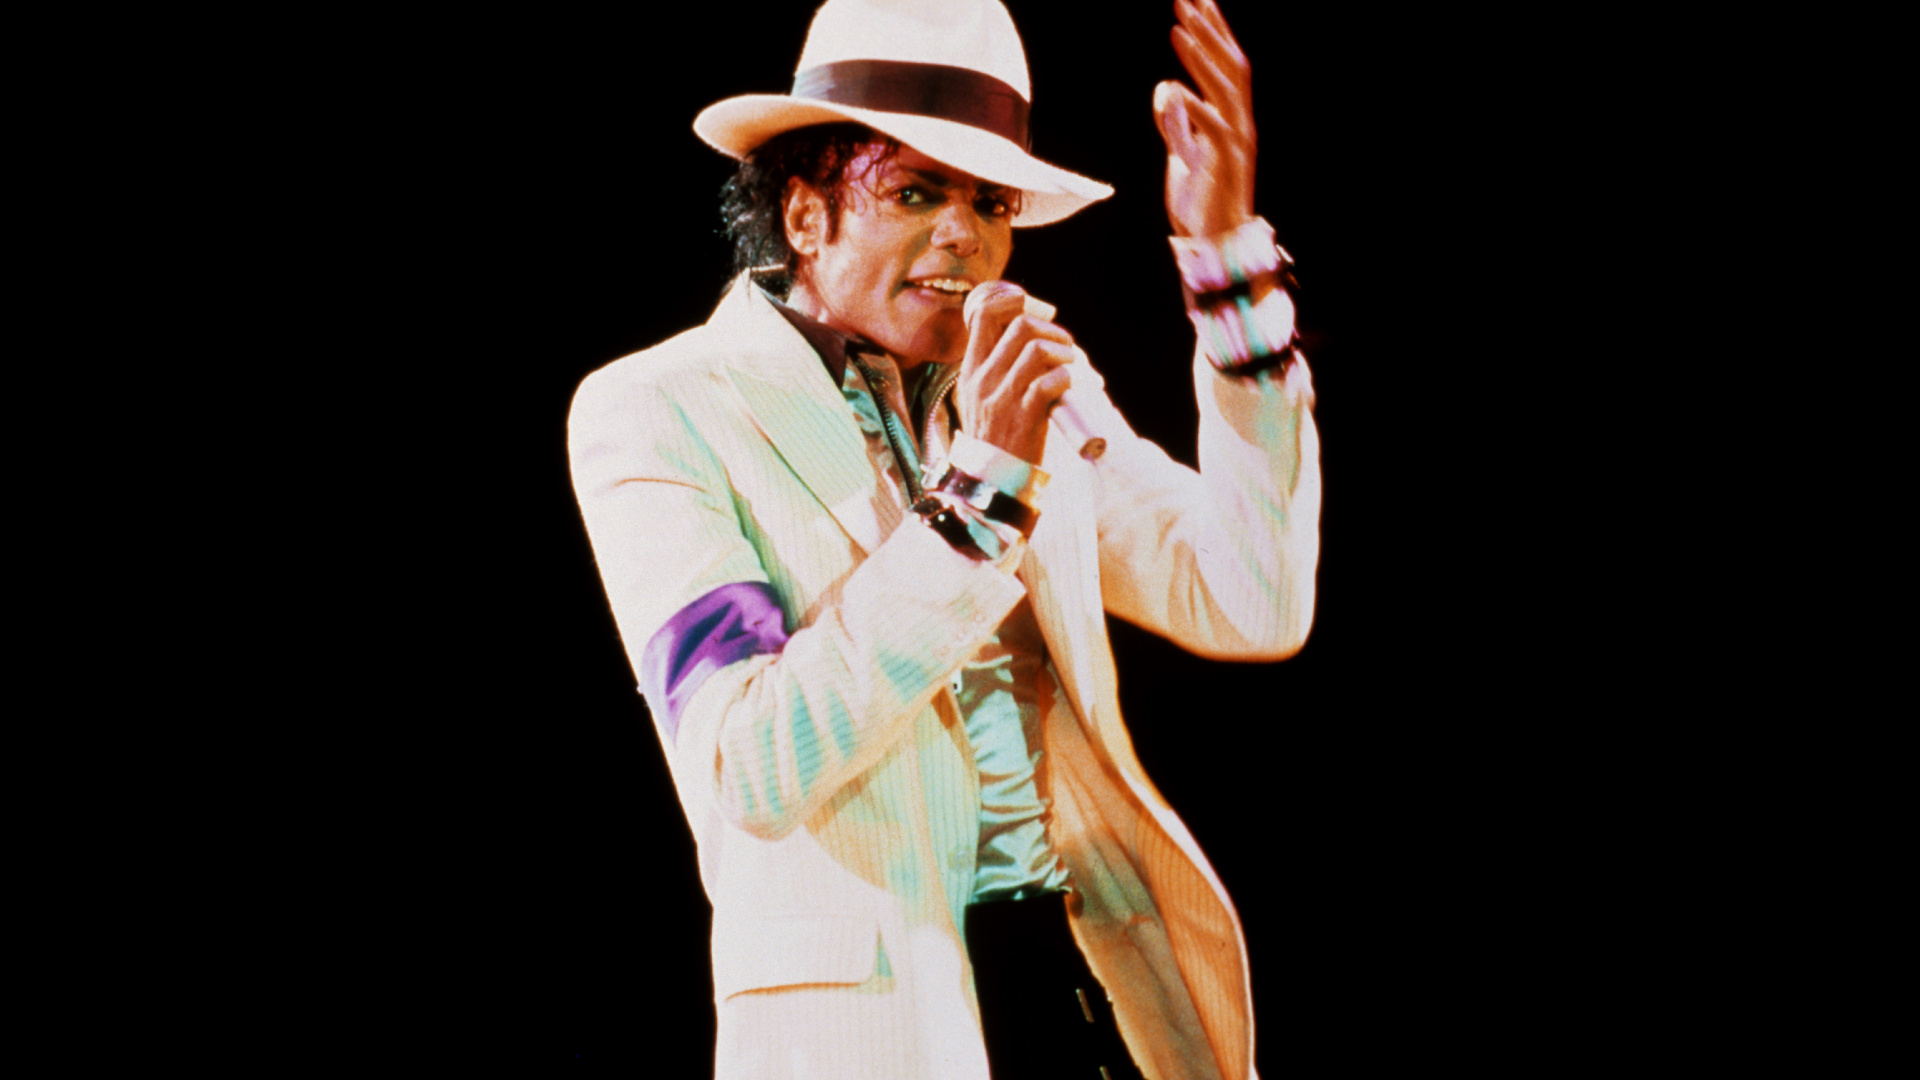 Michael Jackson, Leistung, Musik Künstler, Darstellende Kunst, Veranstaltung. Wallpaper in 1920x1080 Resolution